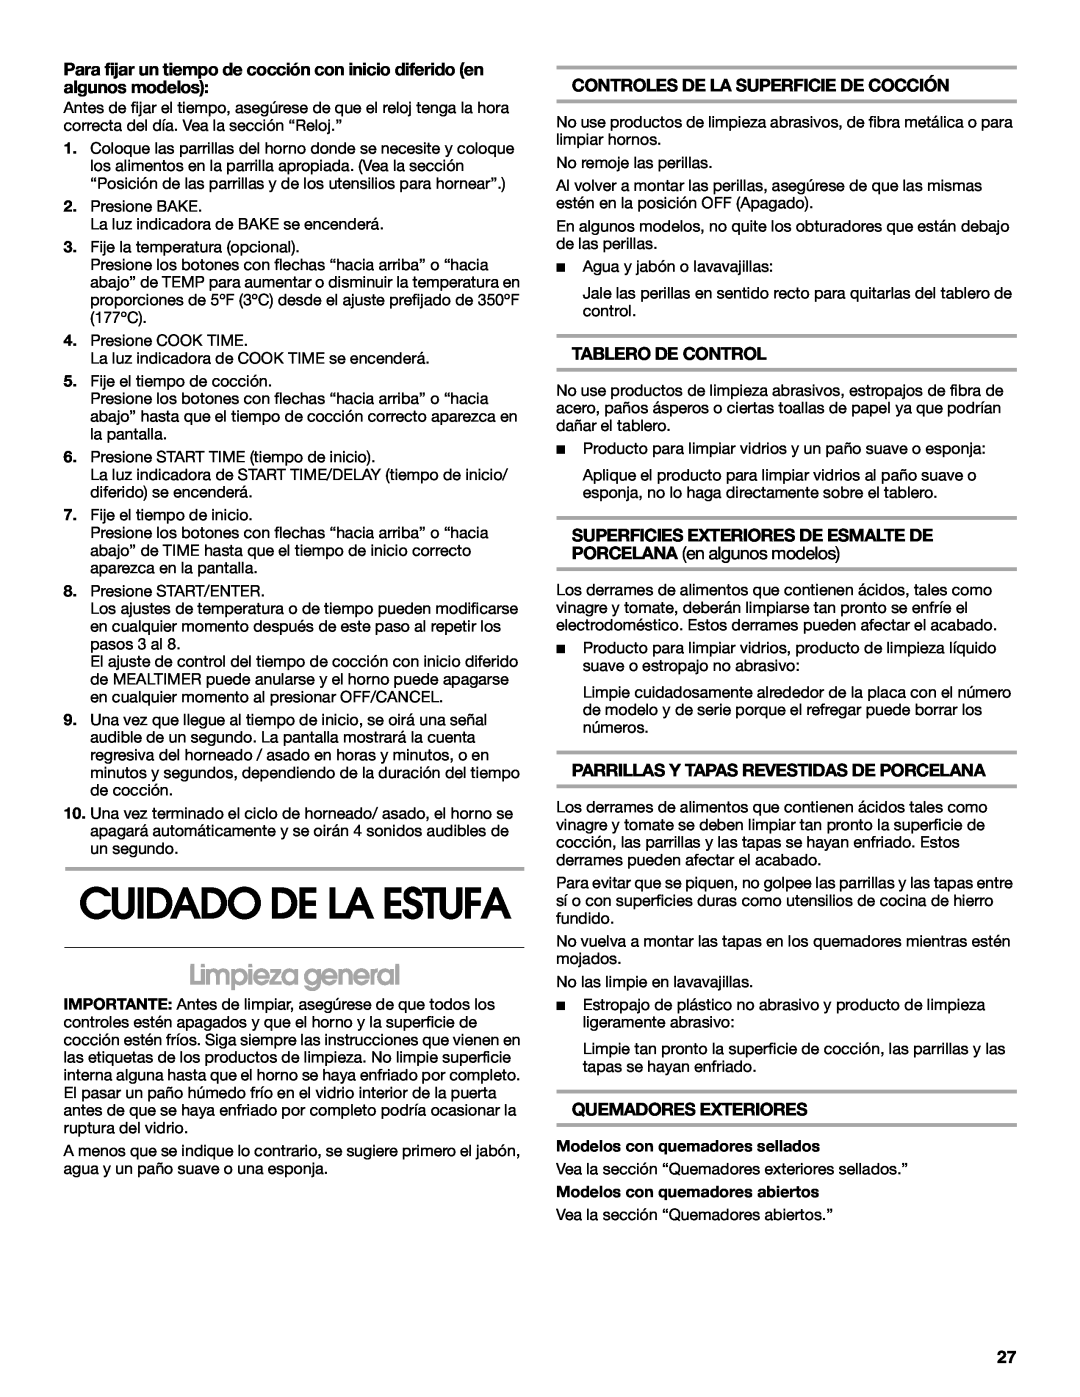 Whirlpool 98012565 manual Cuidado De La Estufa, Limpieza general, Controles De La Superficie De Cocción, Tablero De Control 